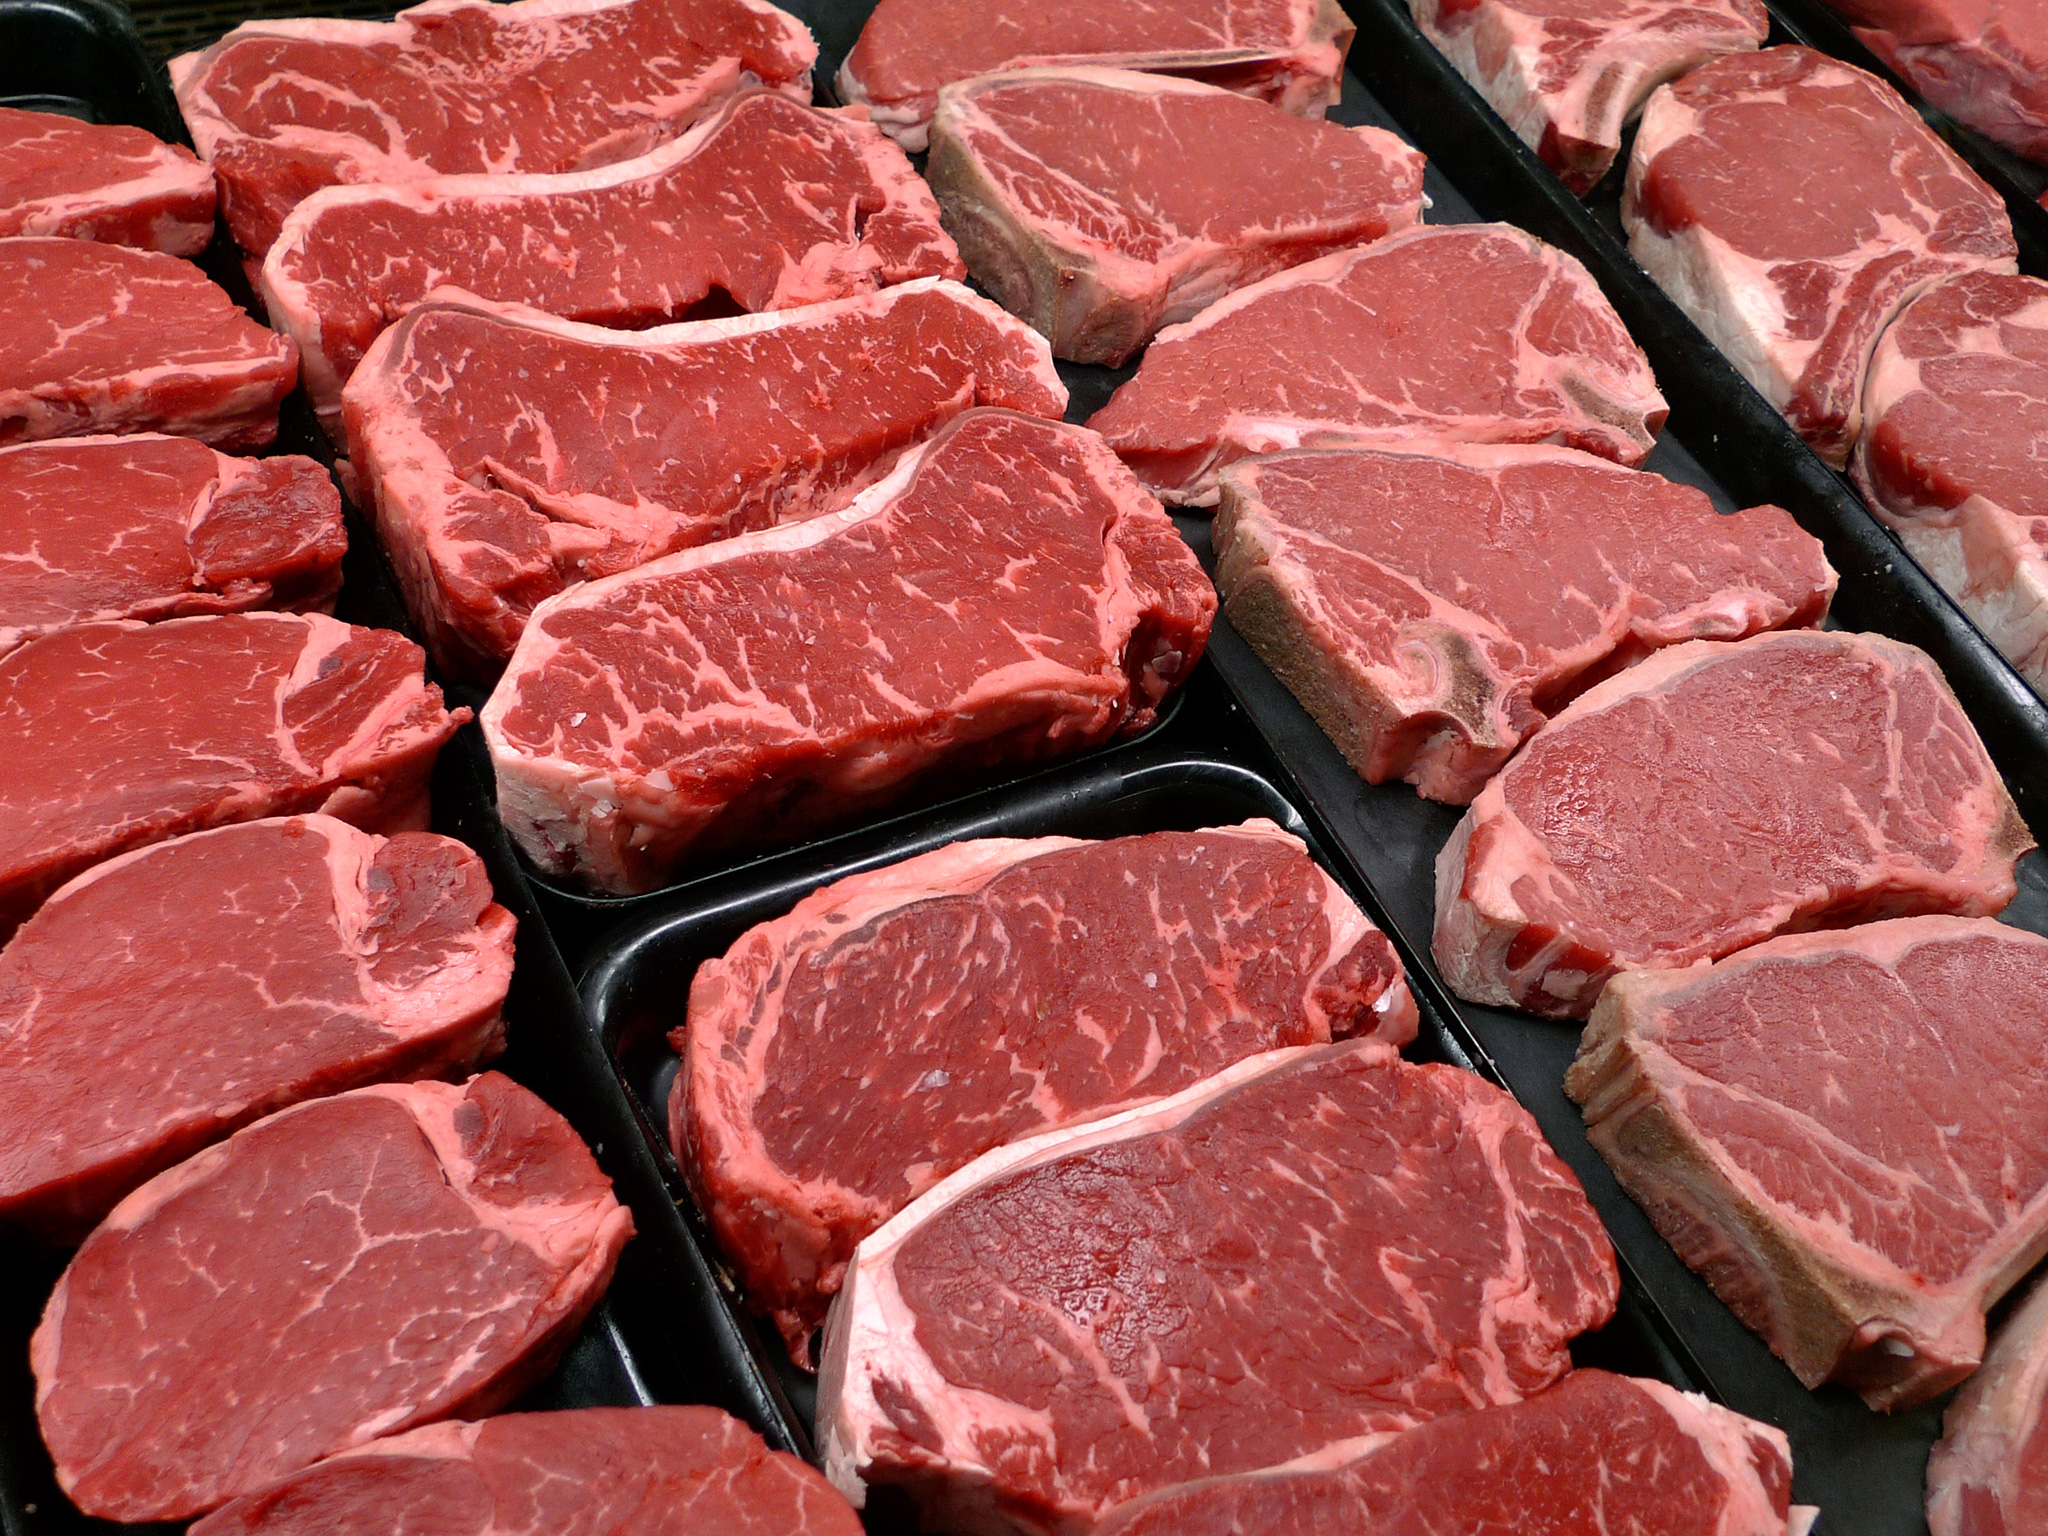 كمية اللحوم الصحية تتراوح بين 300 و600 جرام في الأسبوع، ما يعادل 31 كيلوجراما للفرد في السنة تعبيرية 1